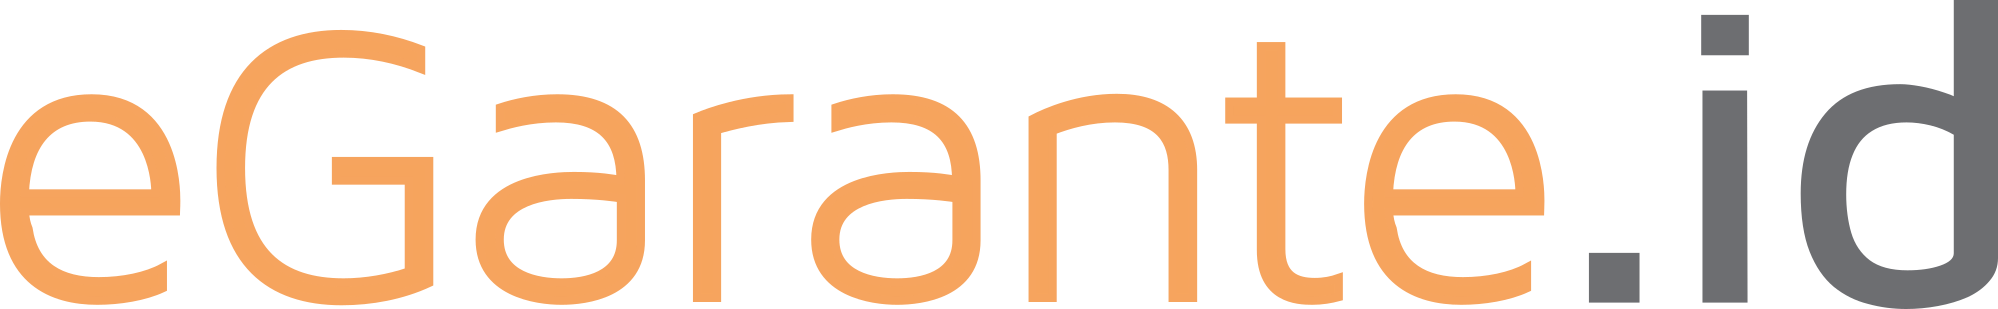 eGarante.id Logo